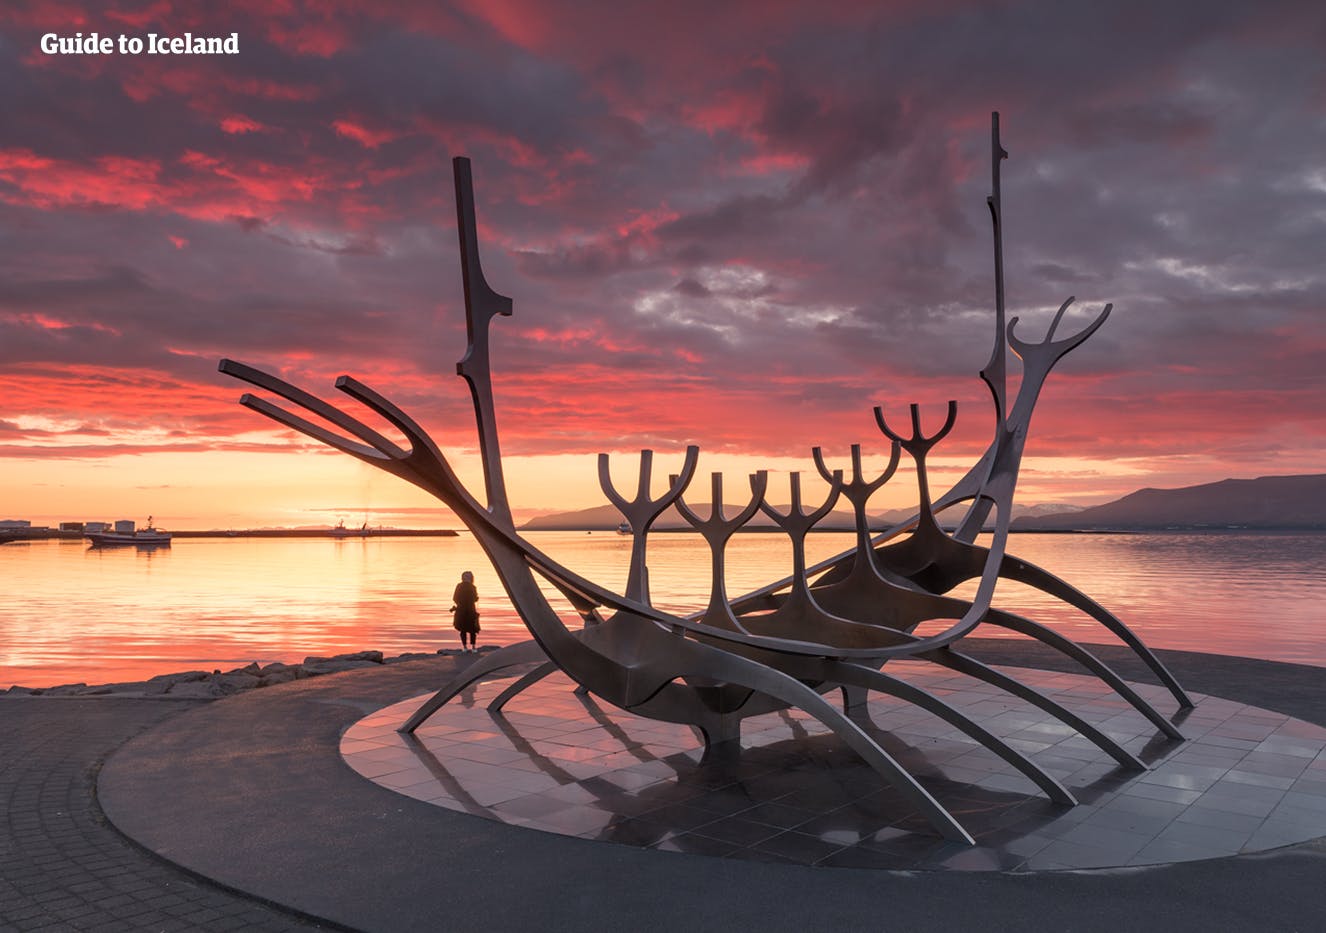 El monumento Sun Voyager que se encuentra en la costa de Reikiavik, la capital de Islandia.